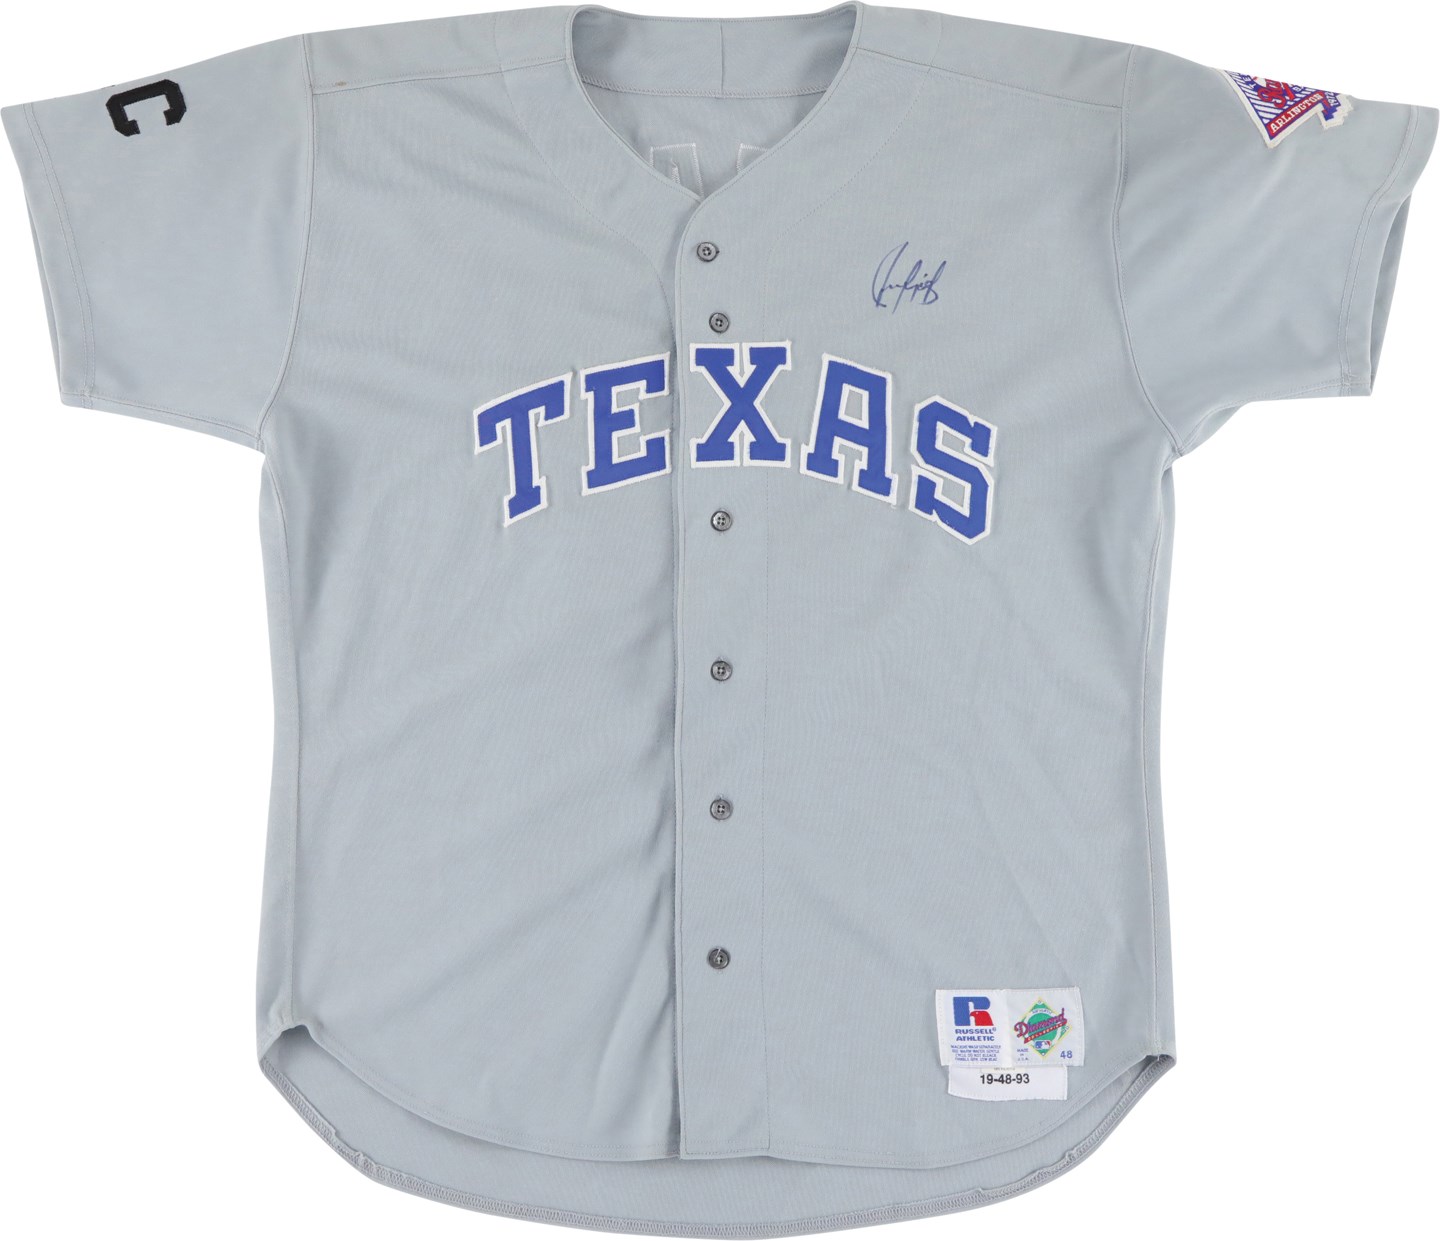 Baseball Equipment - 1993 Juan Gonzalez Texas Rangers Signed Game Worn Jersey